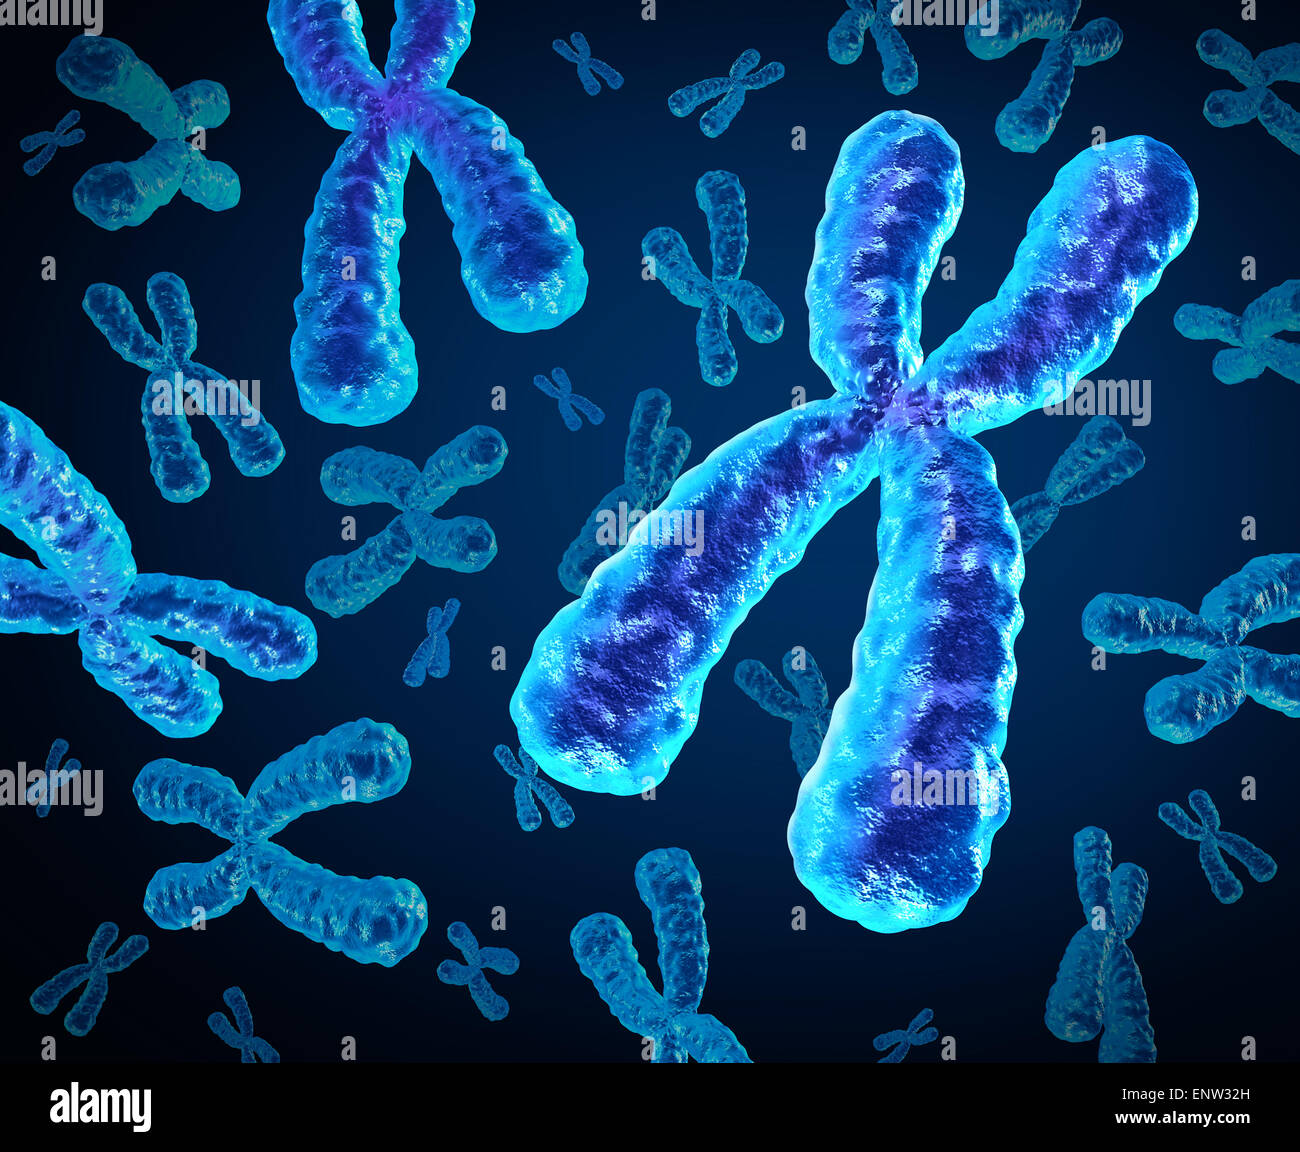 Groupe de chromosomes comme un concept de la biologie humaine x structure contenant l'information génétique de l'ADN comme un symbole médical pour la thérapie génique ou la microbiologie à la recherche génétique. Banque D'Images